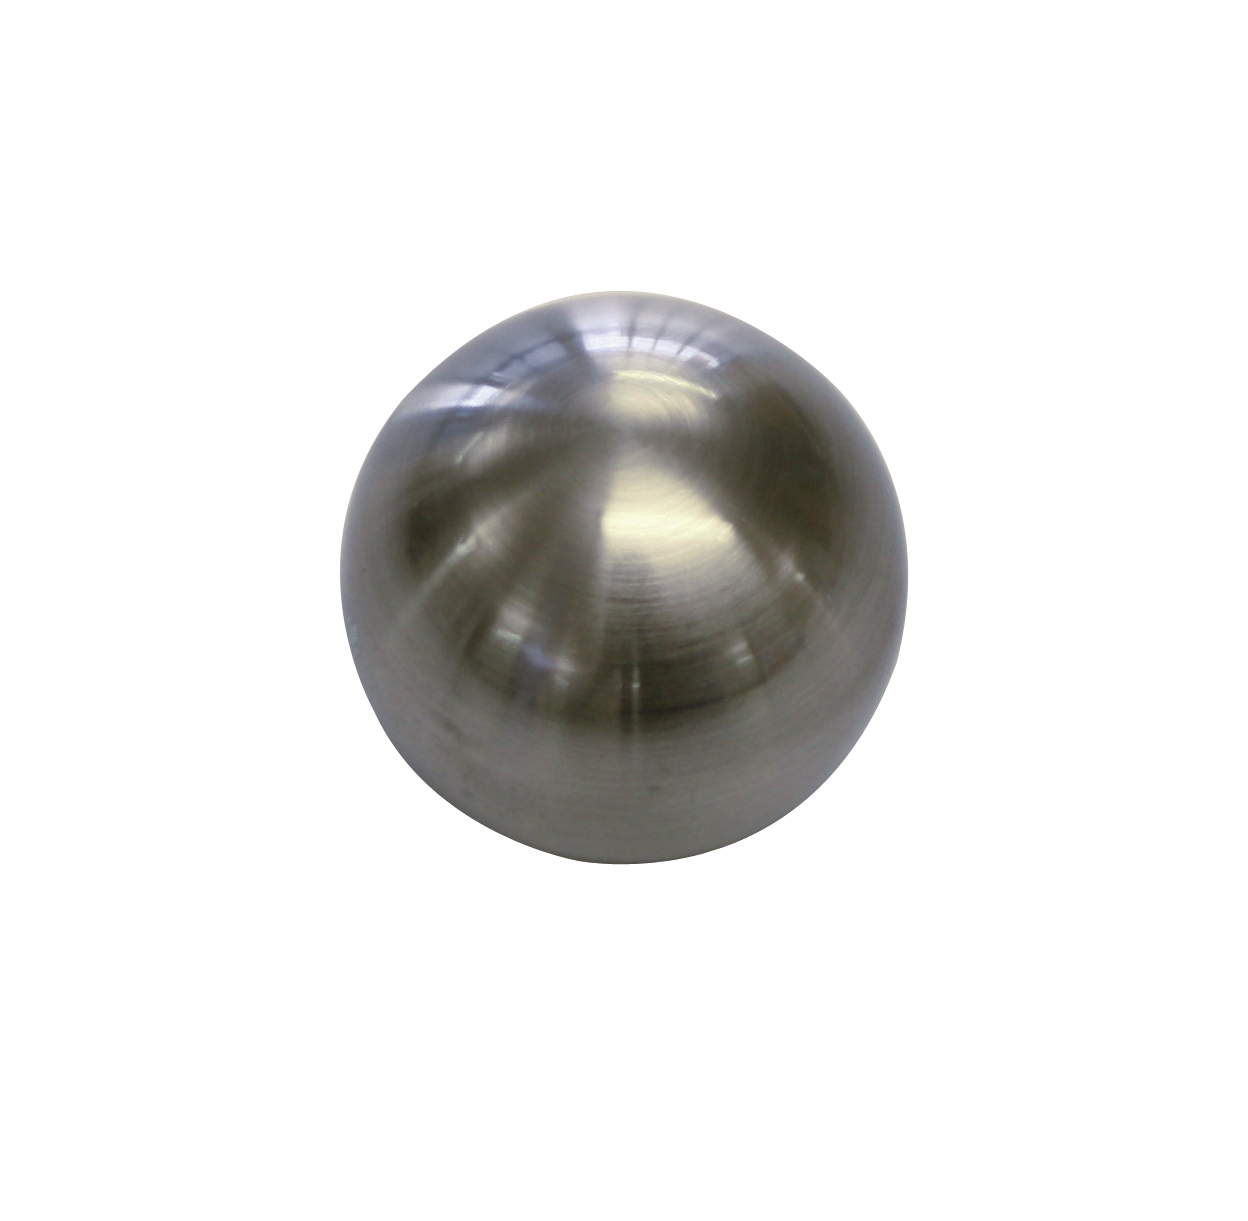 Koncovka Entry Ball, vzhled ušlechtilé oceli - 2ks